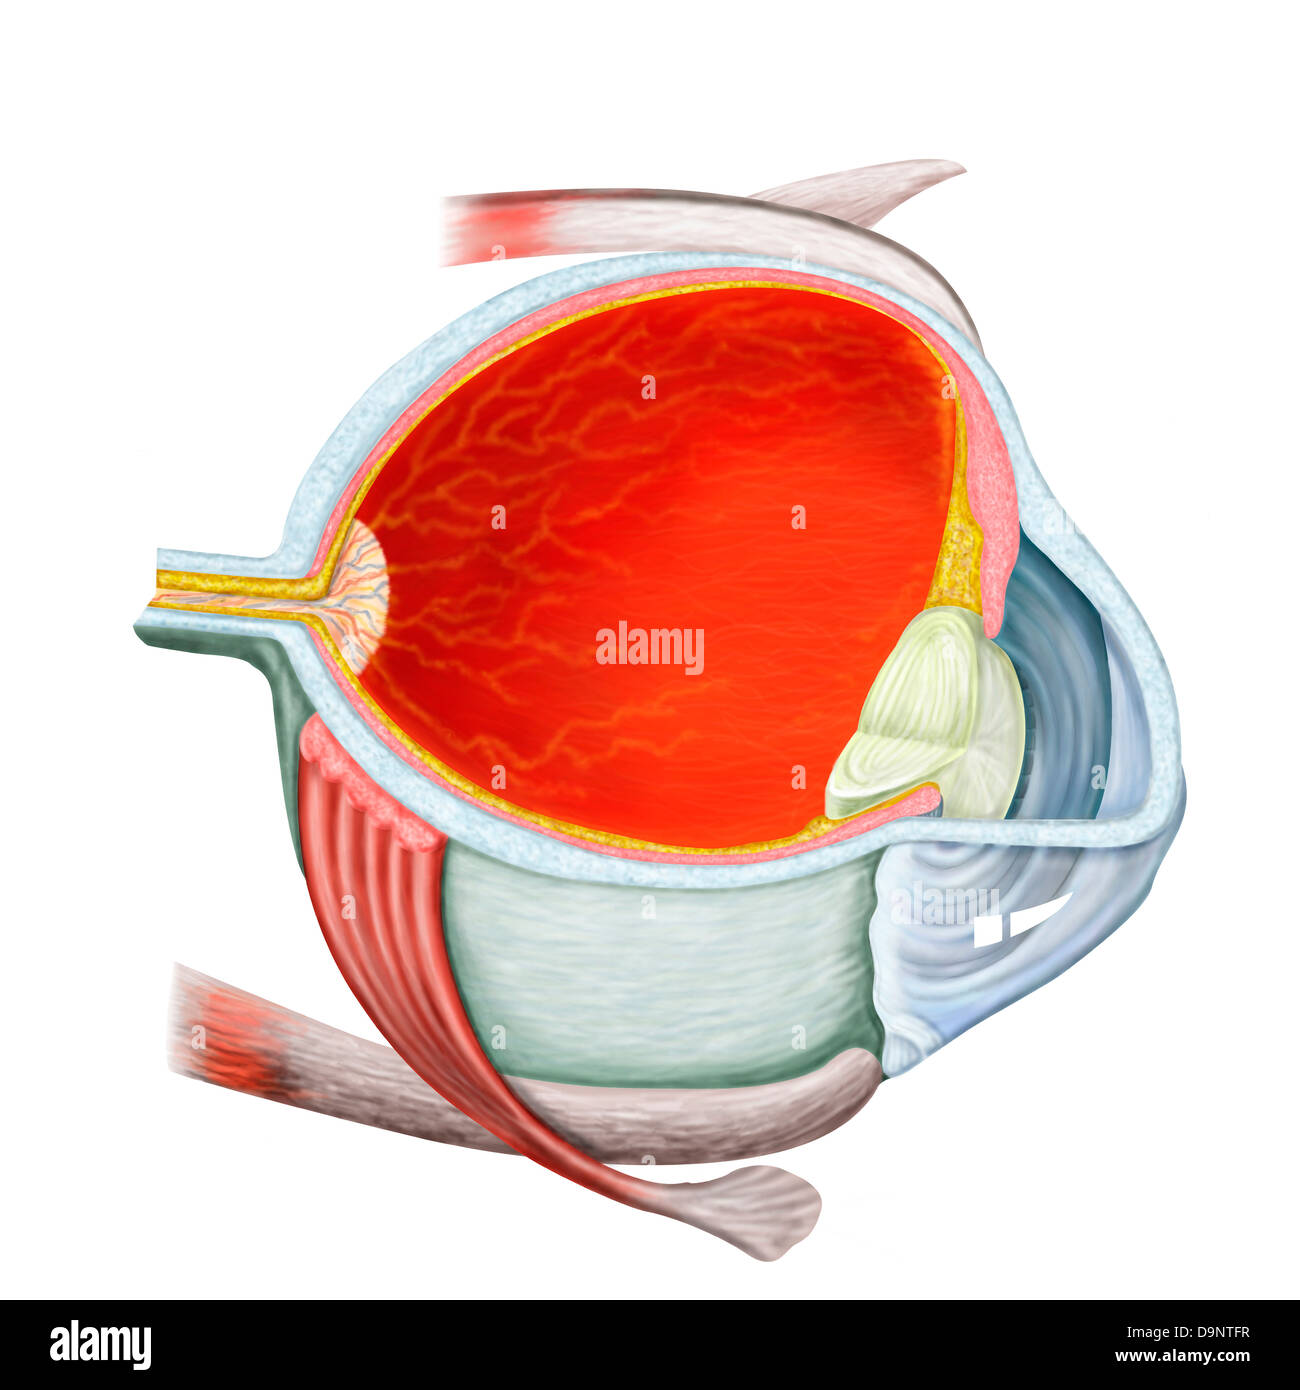 Cross section of human eye. Stock Photo